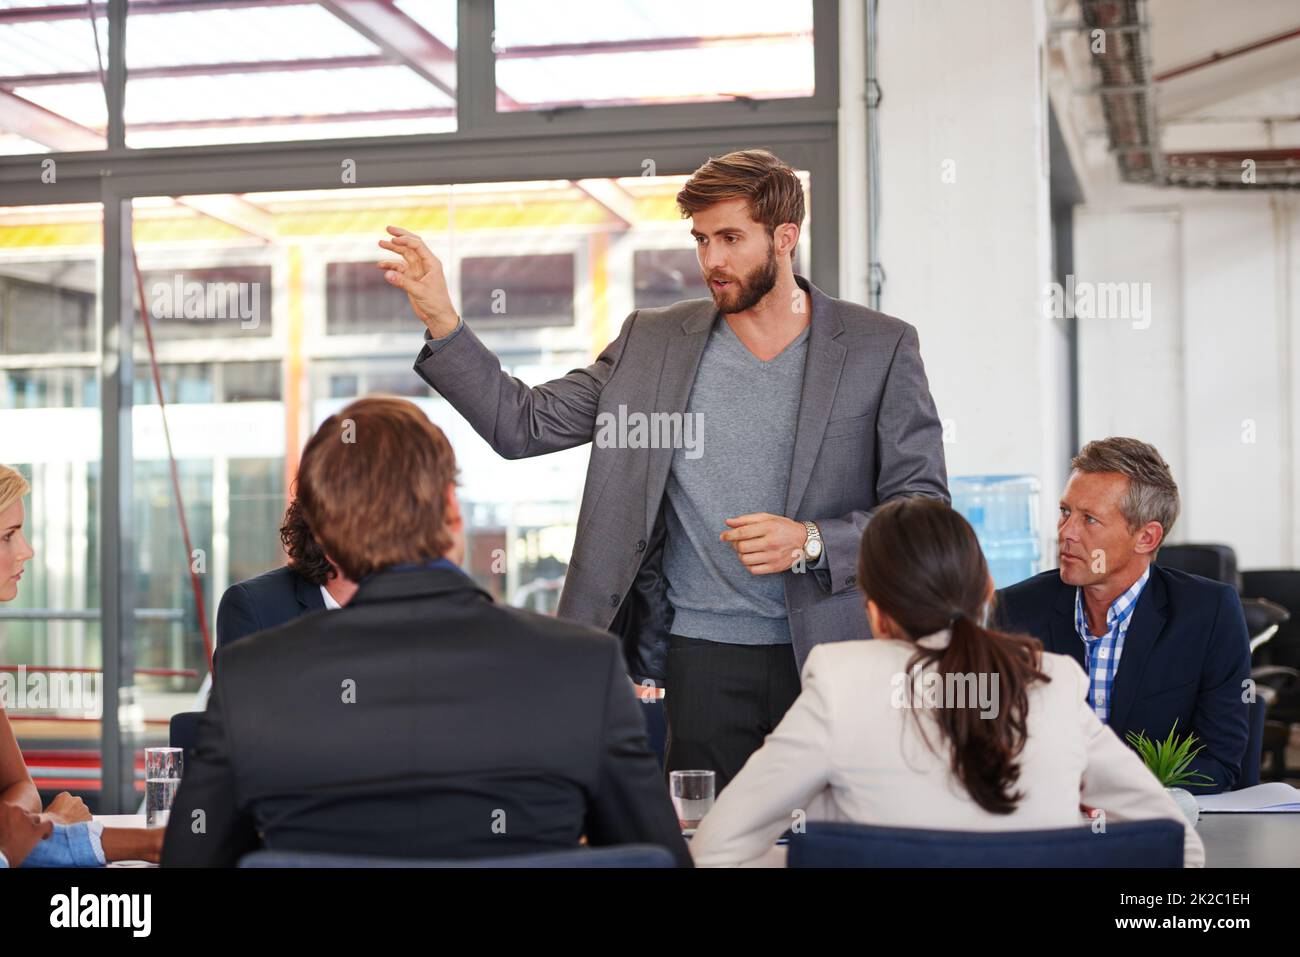 Seine Ideen präsentieren. Eine Aufnahme eines Geschäftsmannes, der sich während eines Meetings an seine Kollegen wendet. Stockfoto